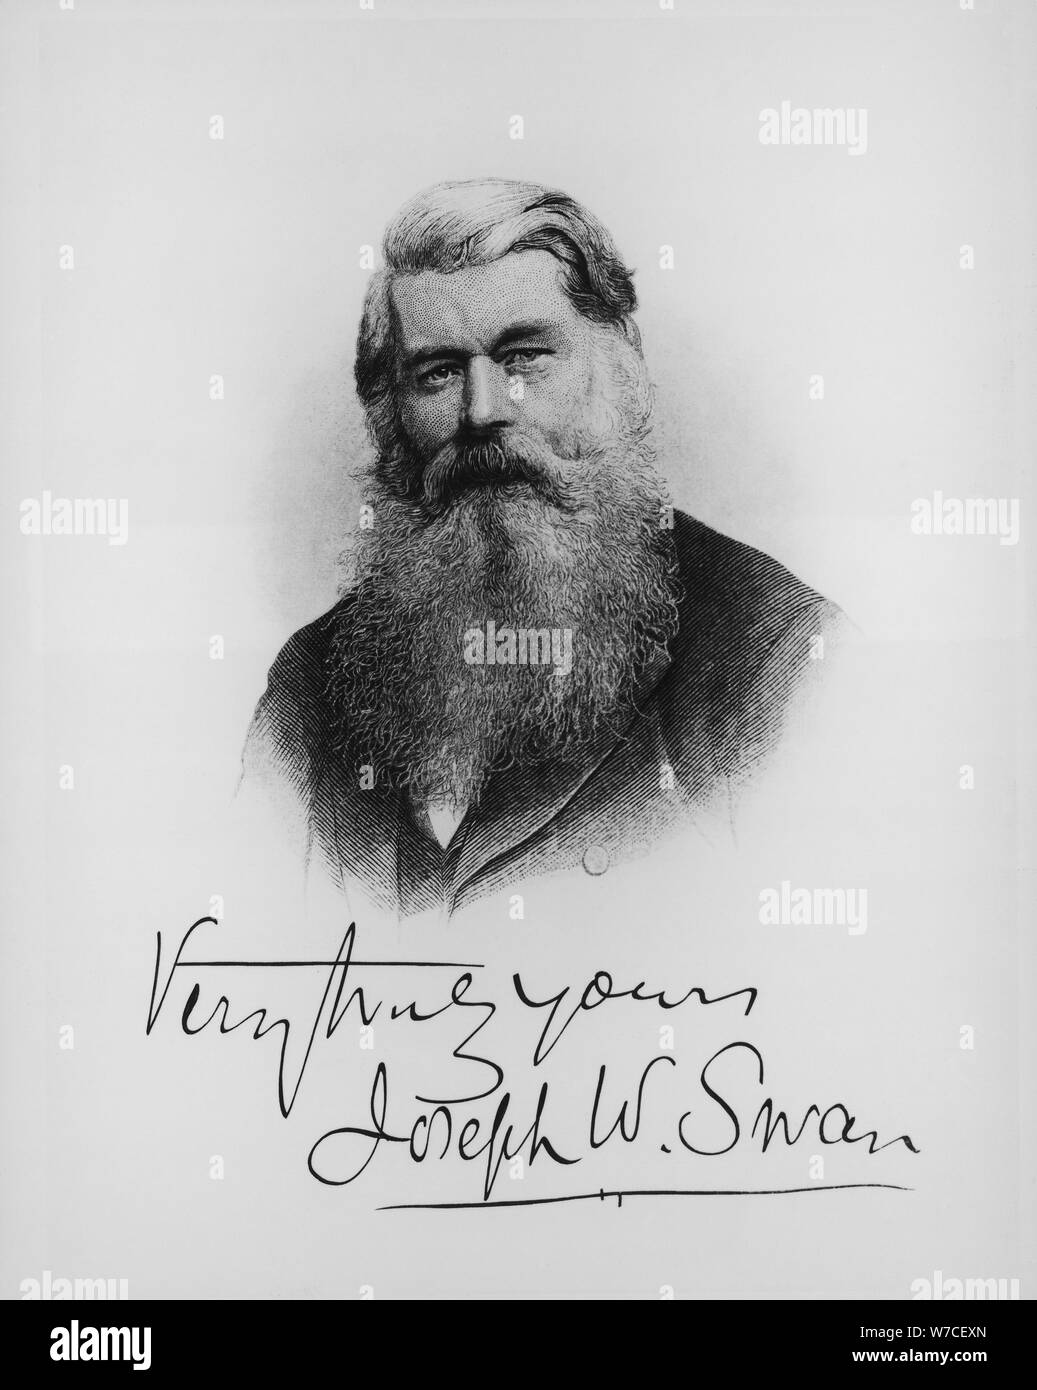 Sir Joseph Wilson Swan, scientist and inventor, c1900. Artist: Unknown Stock Photo